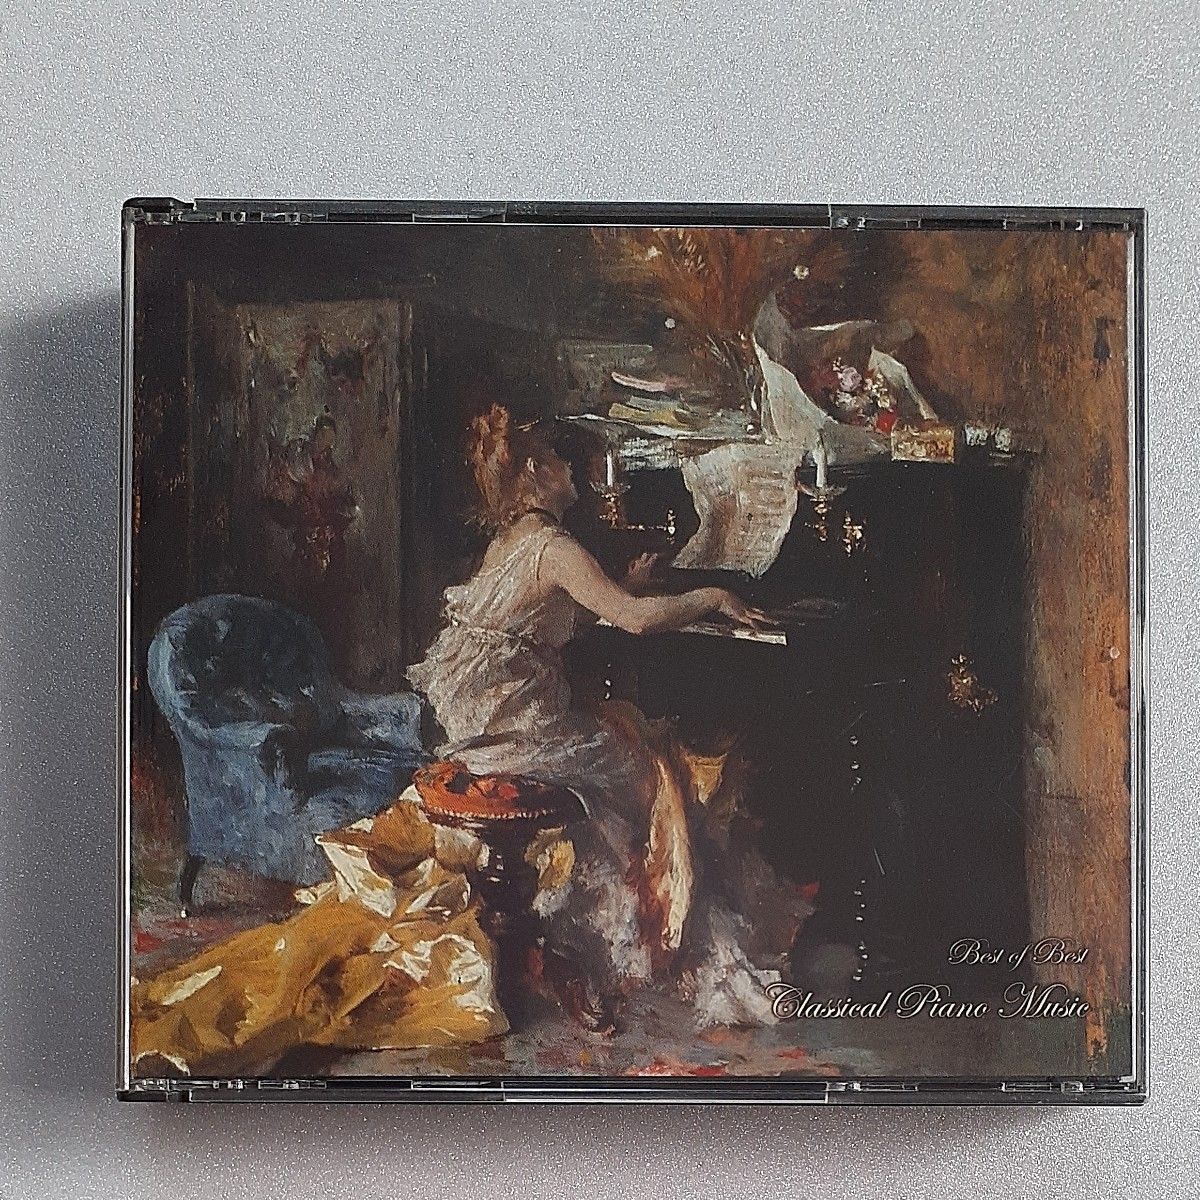  ベストオブベスト/クラシックピアノ CD (オムニバス) タチアナニコラーエワ、ガブリエルチョ